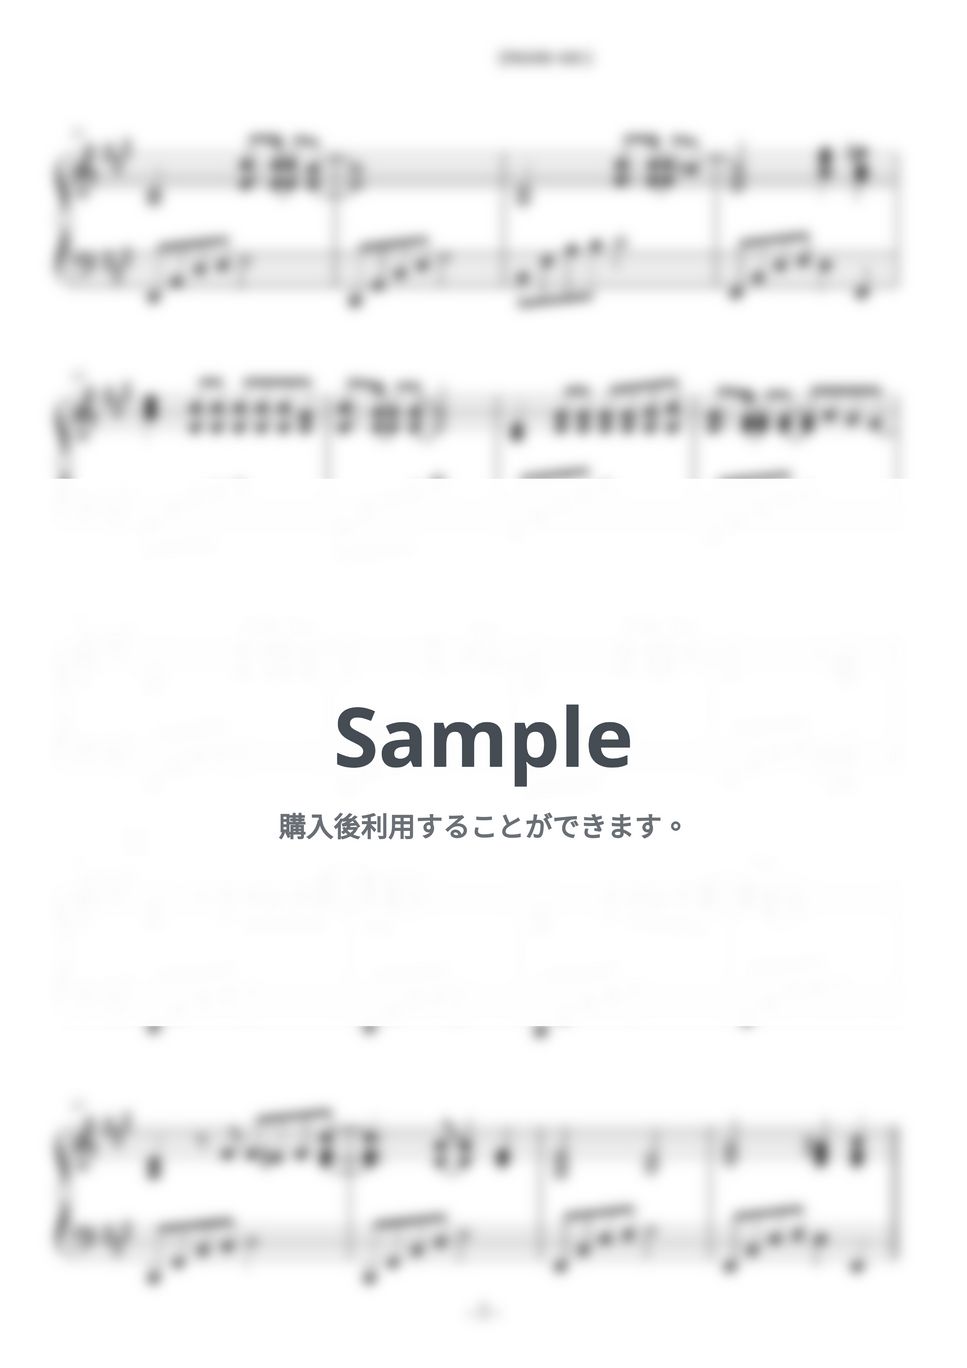 山下達郎 - クリスマス・イブ by ABIA Music